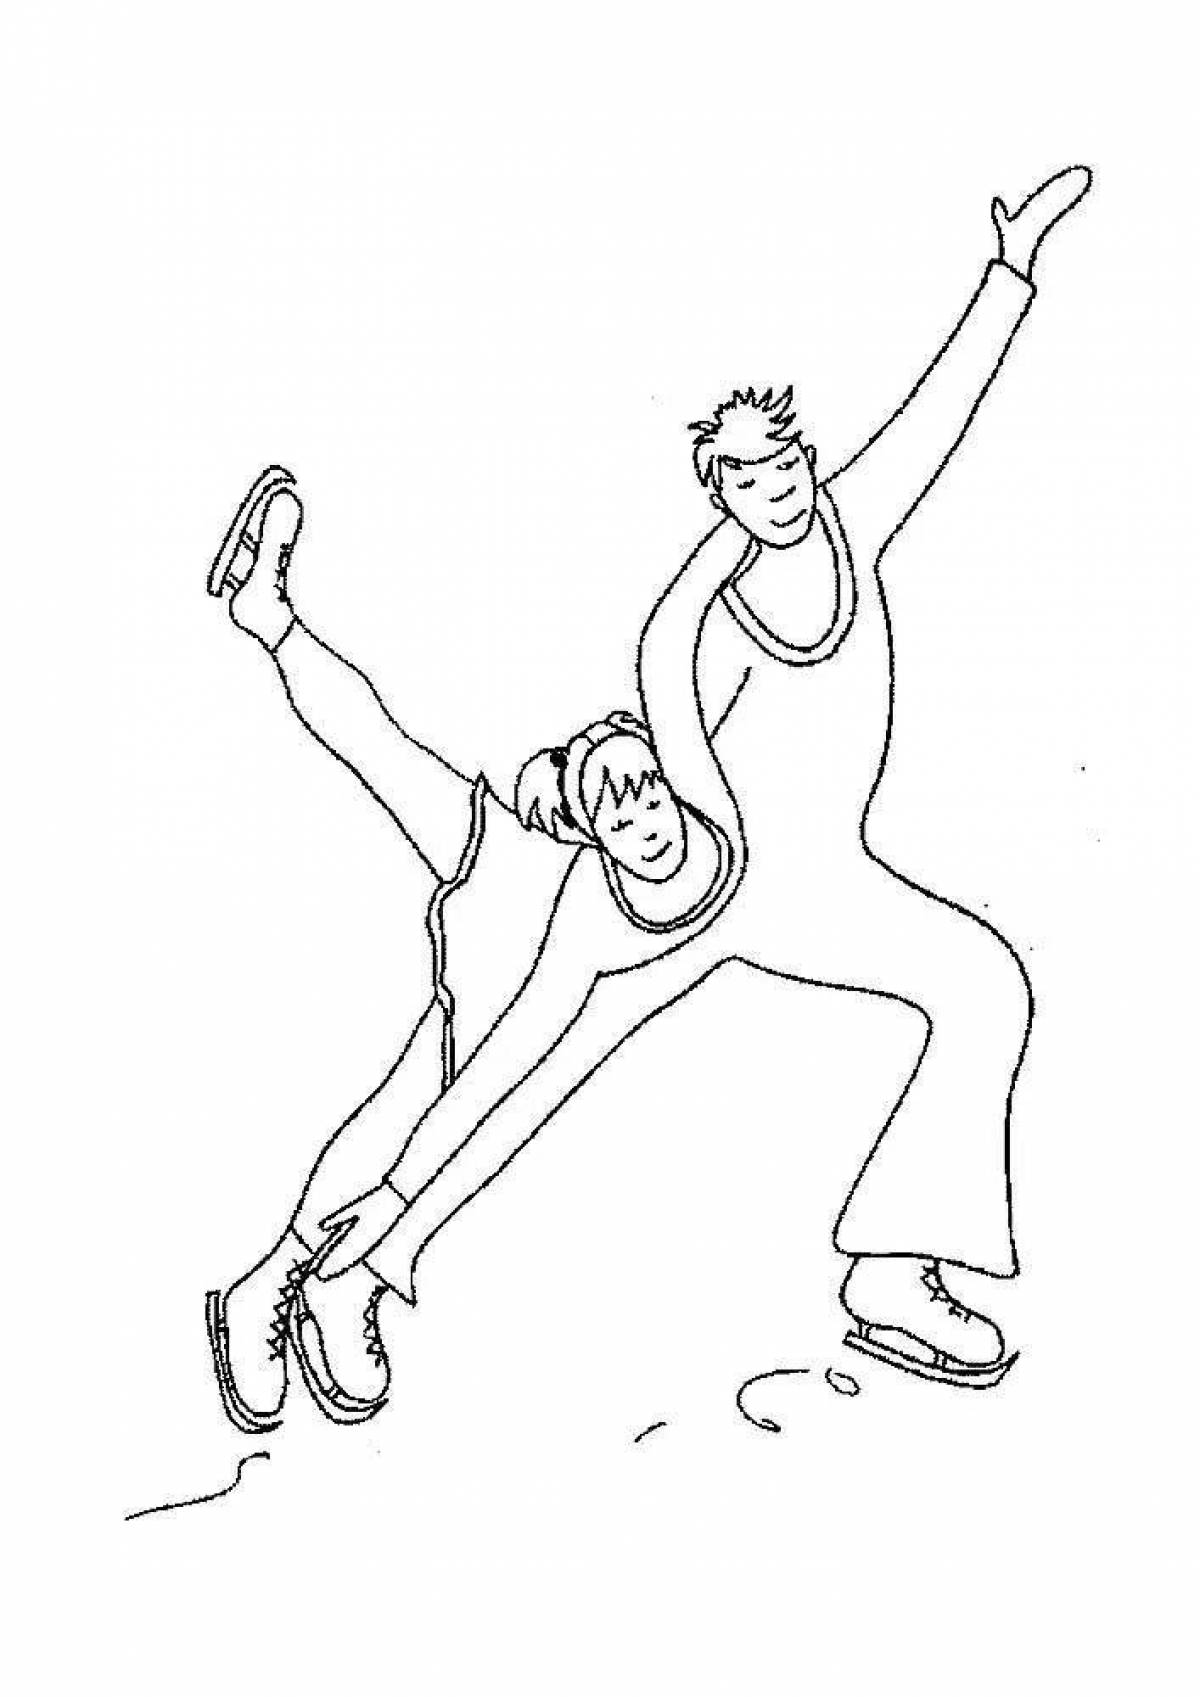 Joyful skaters